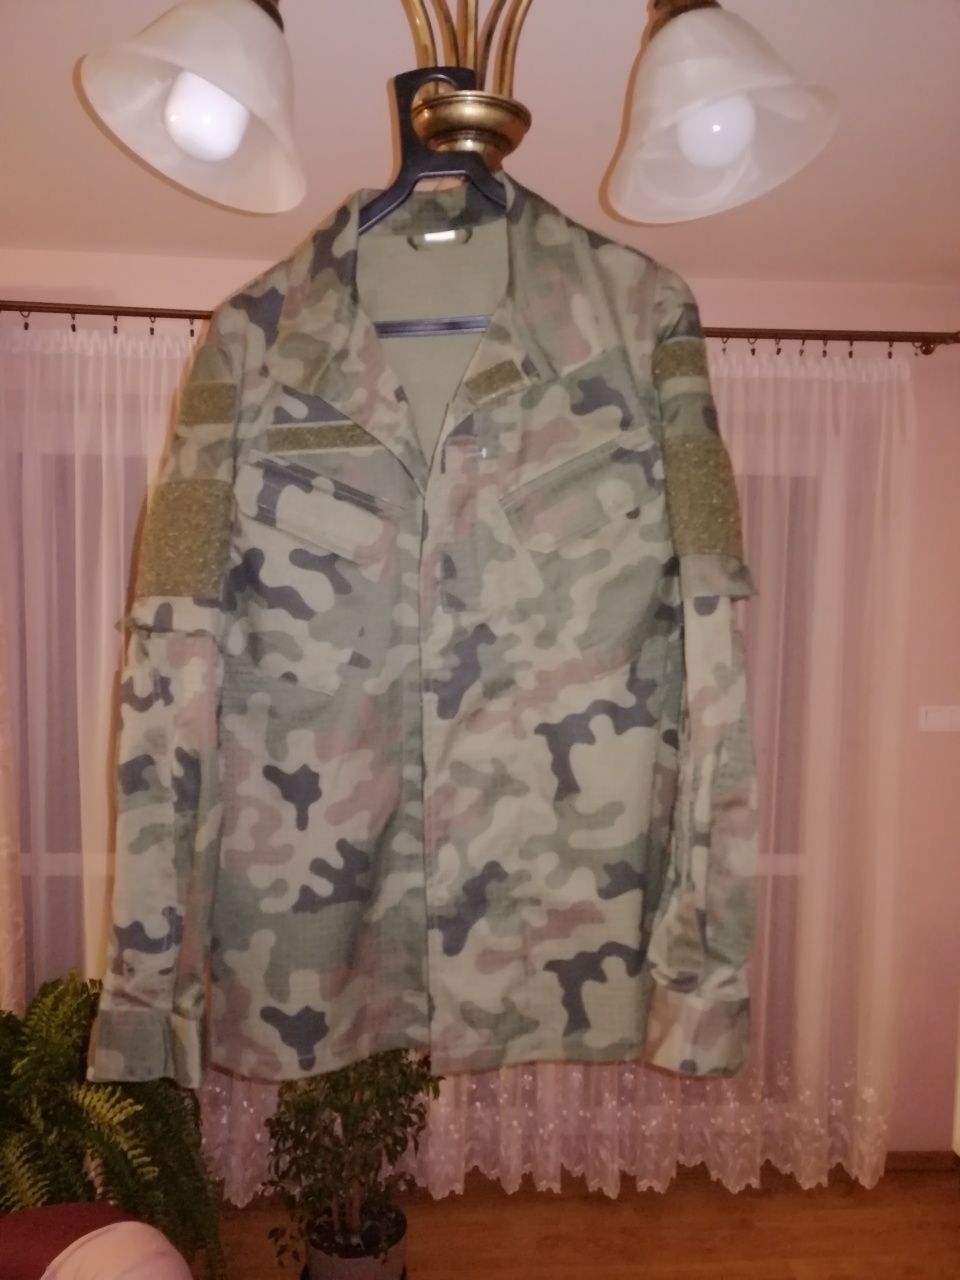 Mundur, bluza do munduru polowego wzór 2010 M/R + (gratis)